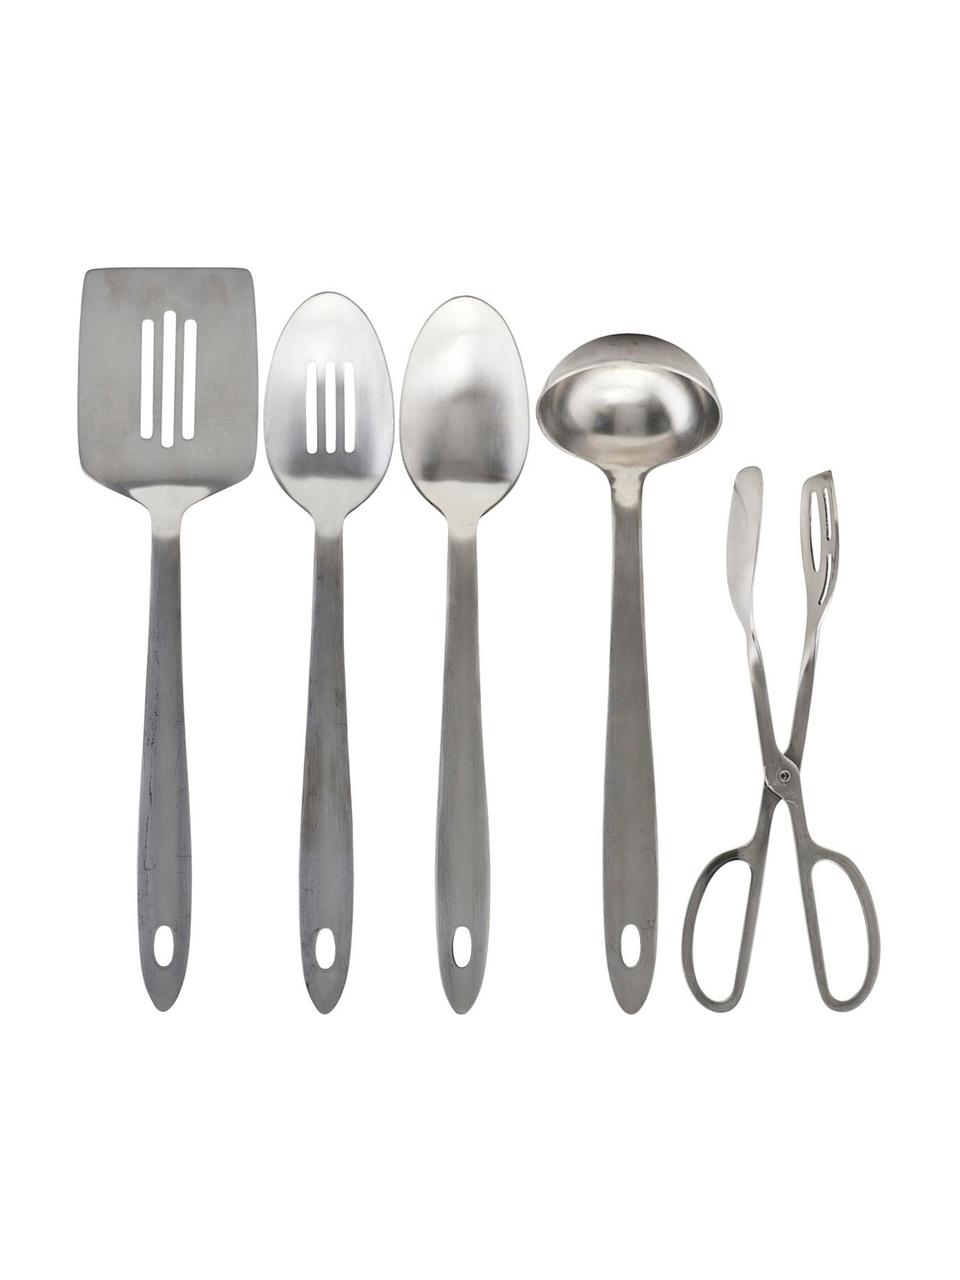 Küchenutensilien Take in Silber, 5er-Set, Edelstahl, Silberfarben, Set mit verschiedenen Grössen